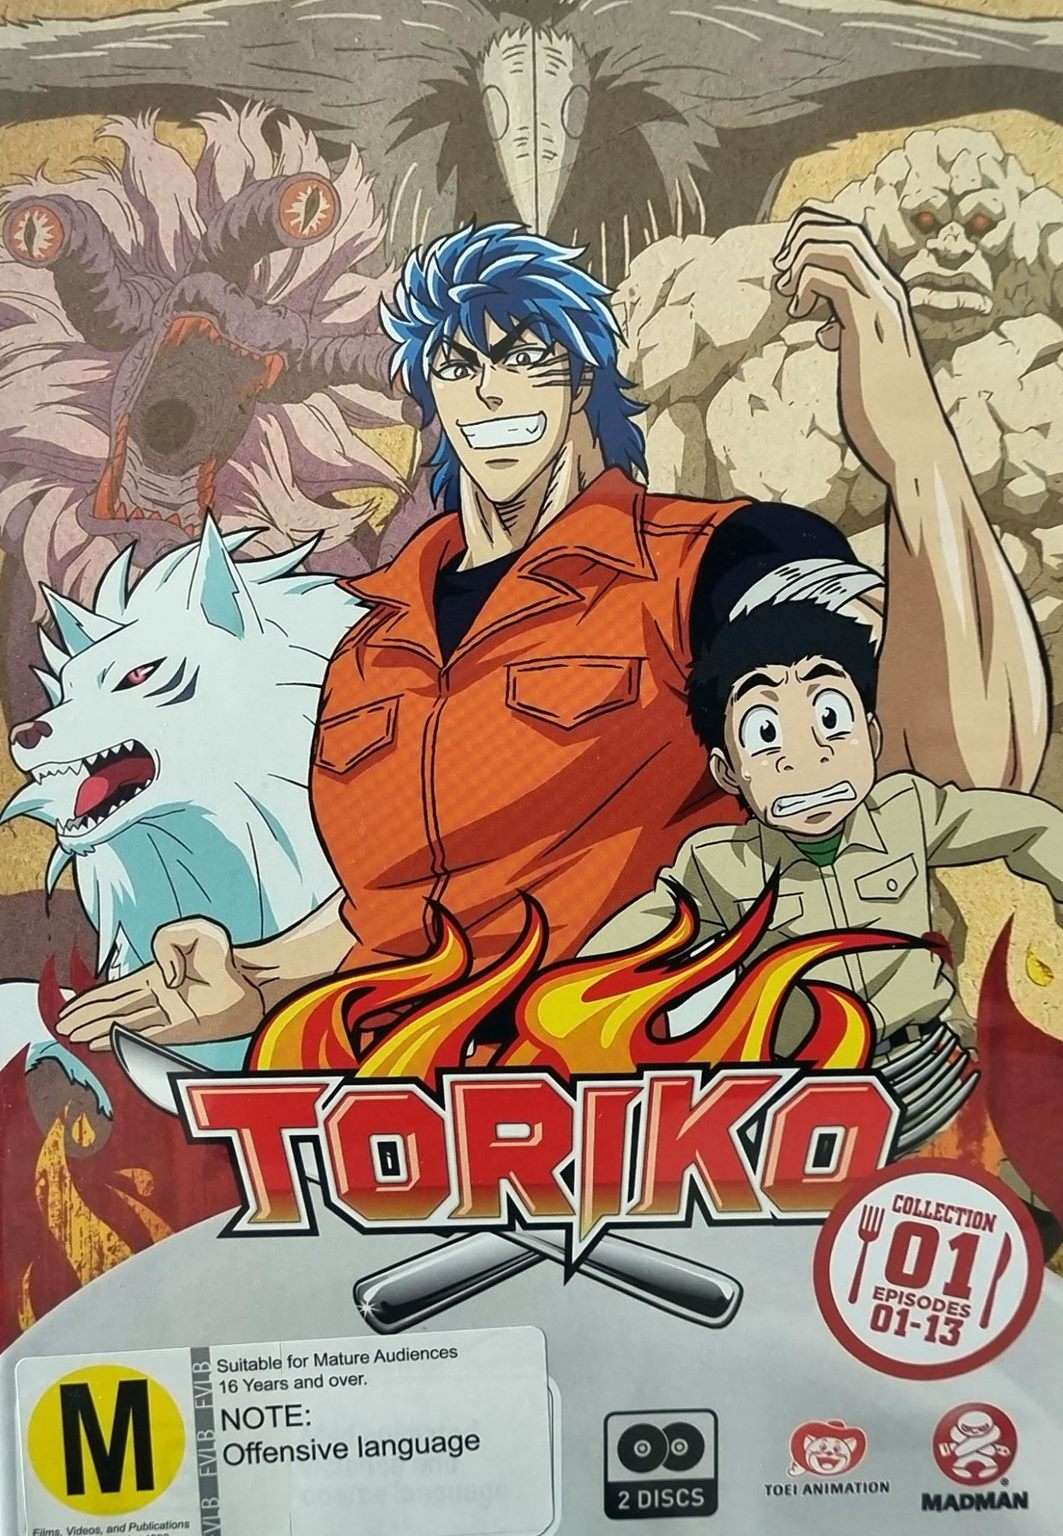 Toriko Collection 1: Episodes 01-13